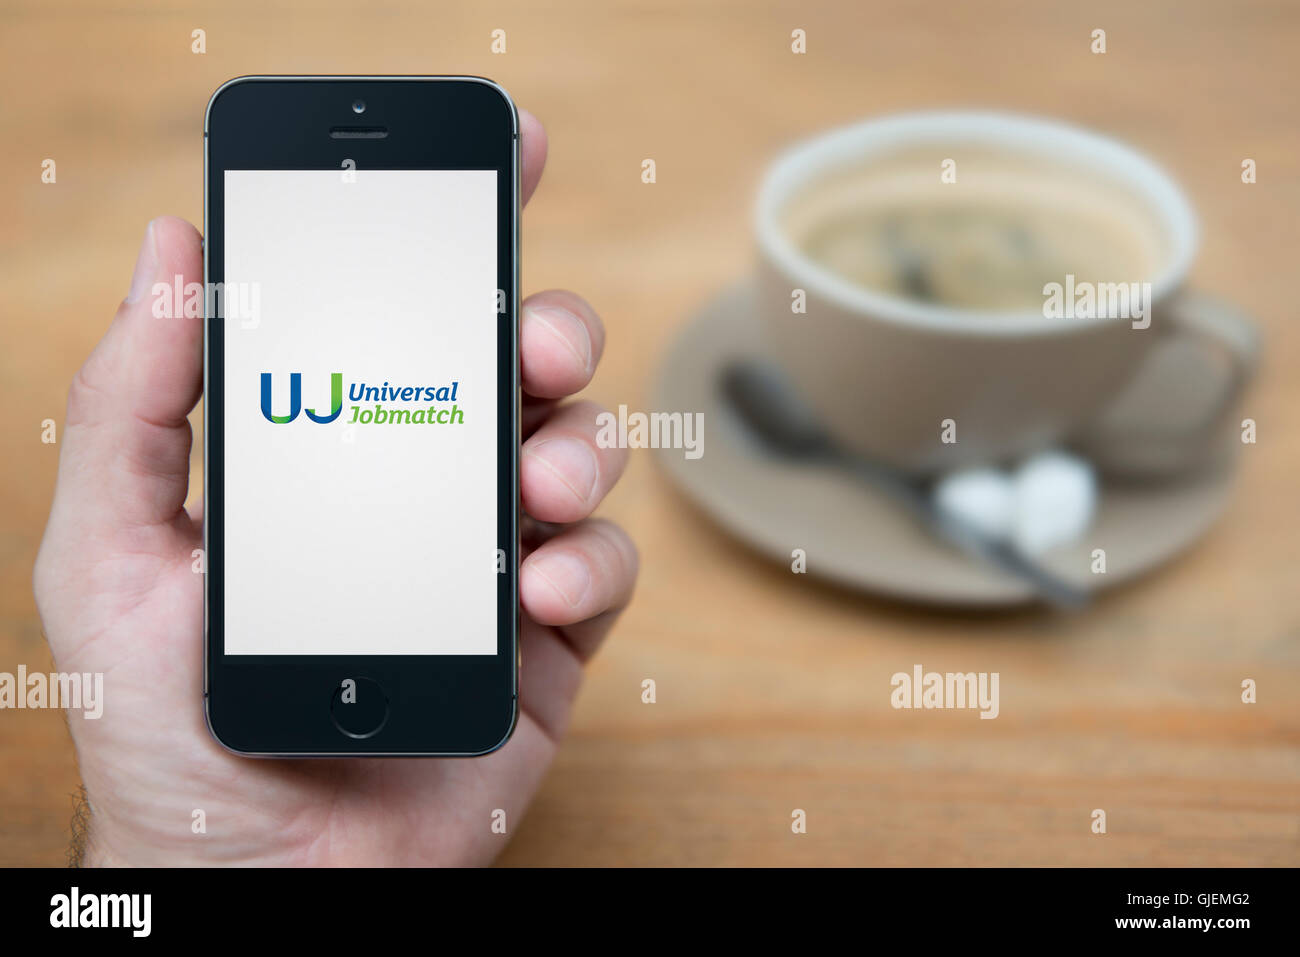 Un homme se penche sur son iPhone qui affiche le logo Jobmatch universelle, en restant assis avec une tasse de café (usage éditorial uniquement). Banque D'Images